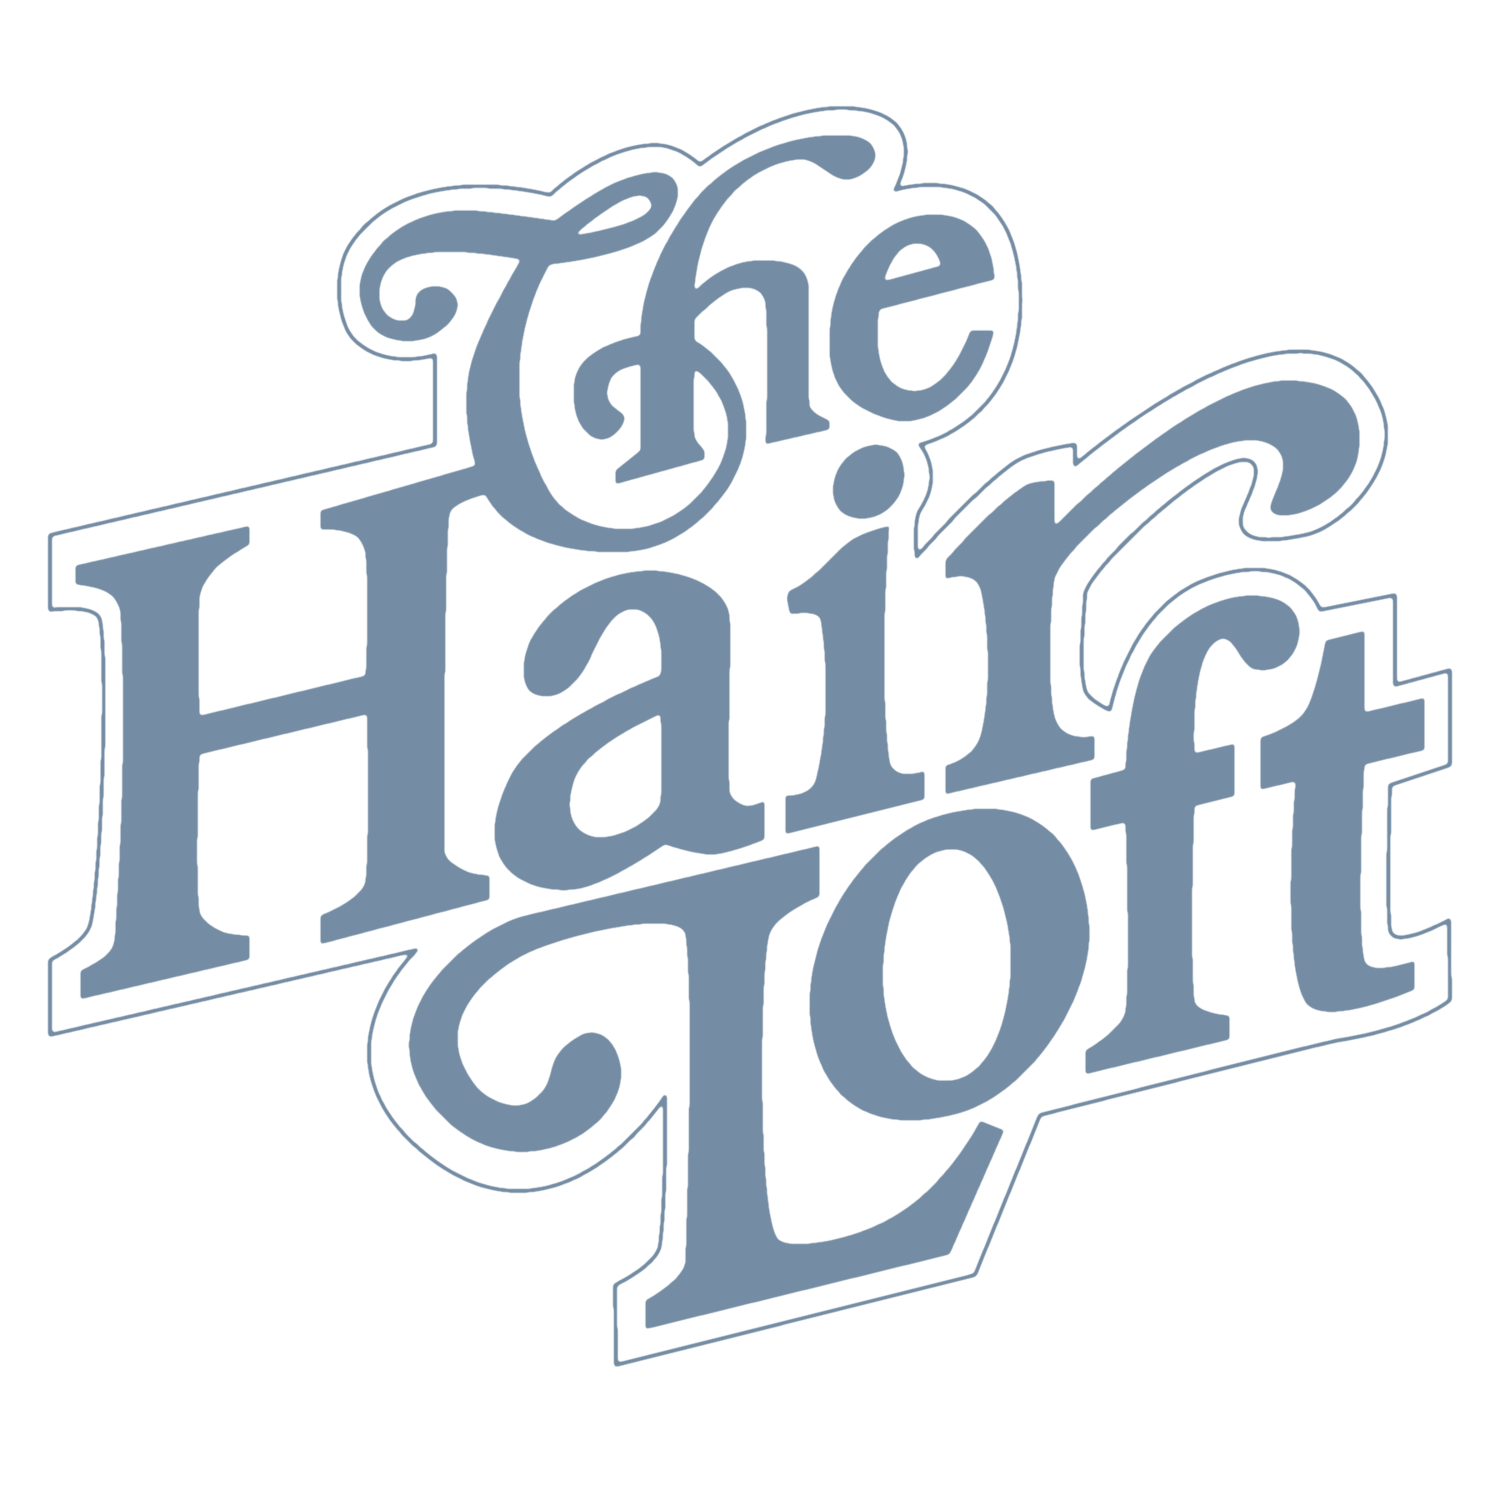 The Hair Loft Ltd